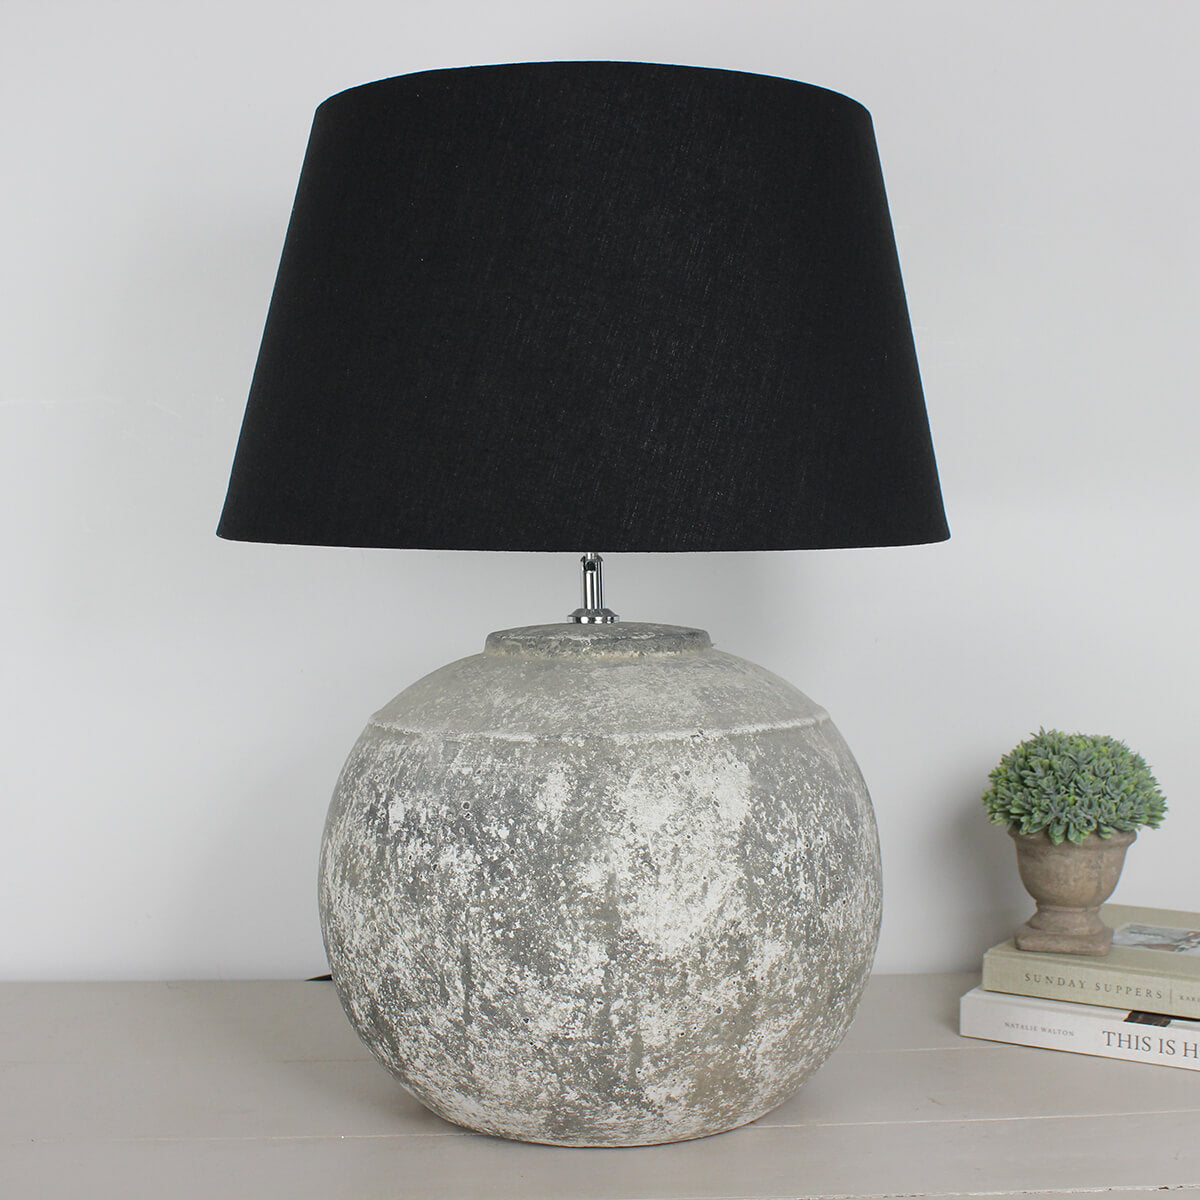 Regola Aged Stone Ceramic Table Lamp